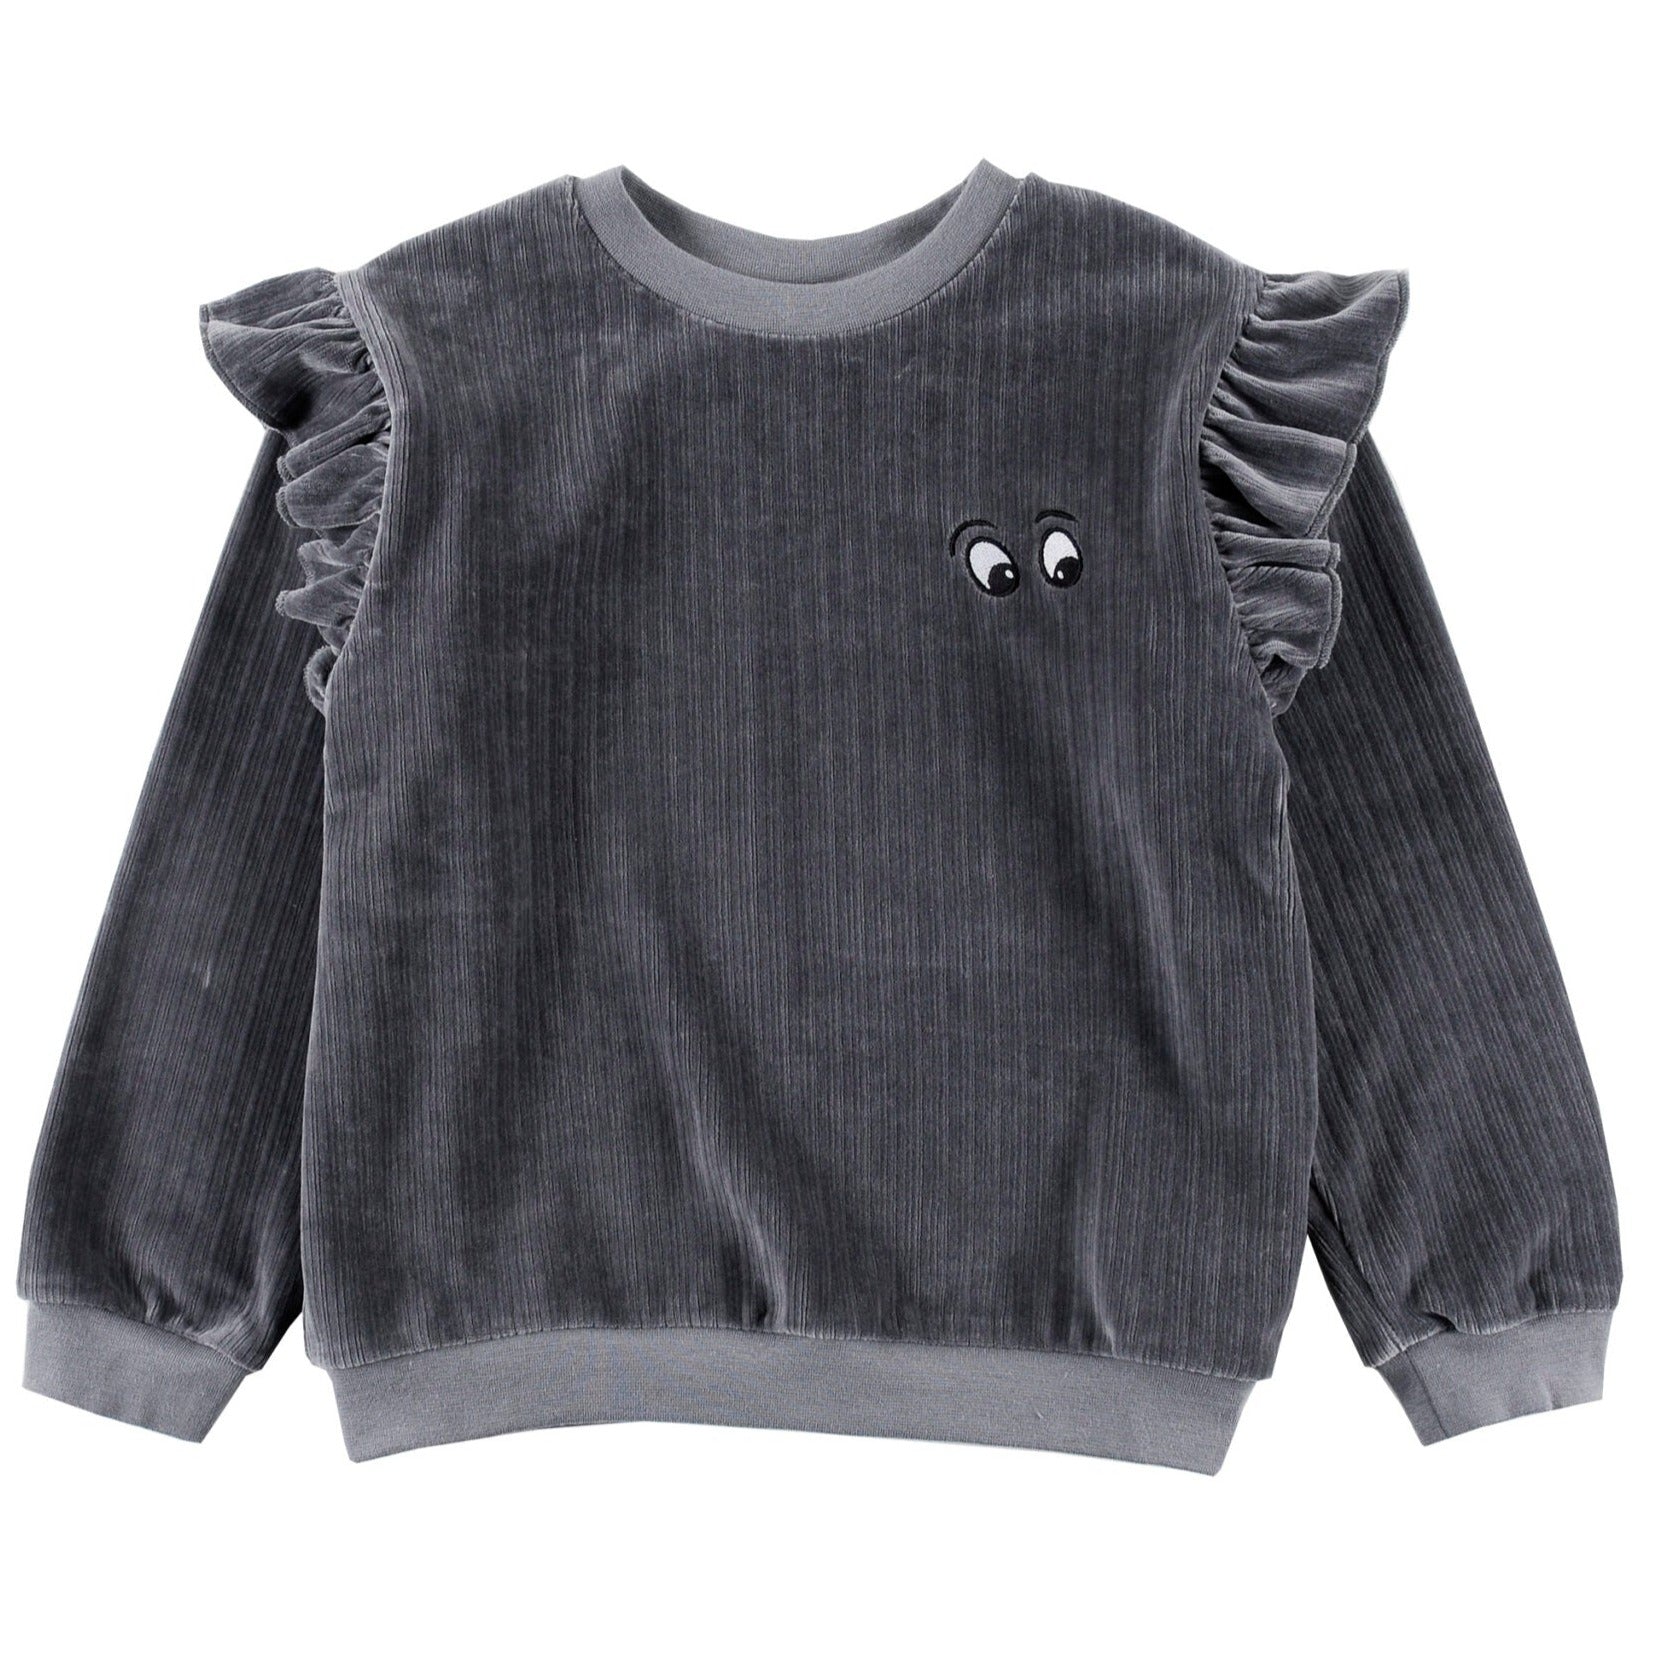 Loud Apparel Ruffles Sweater - Asphalt